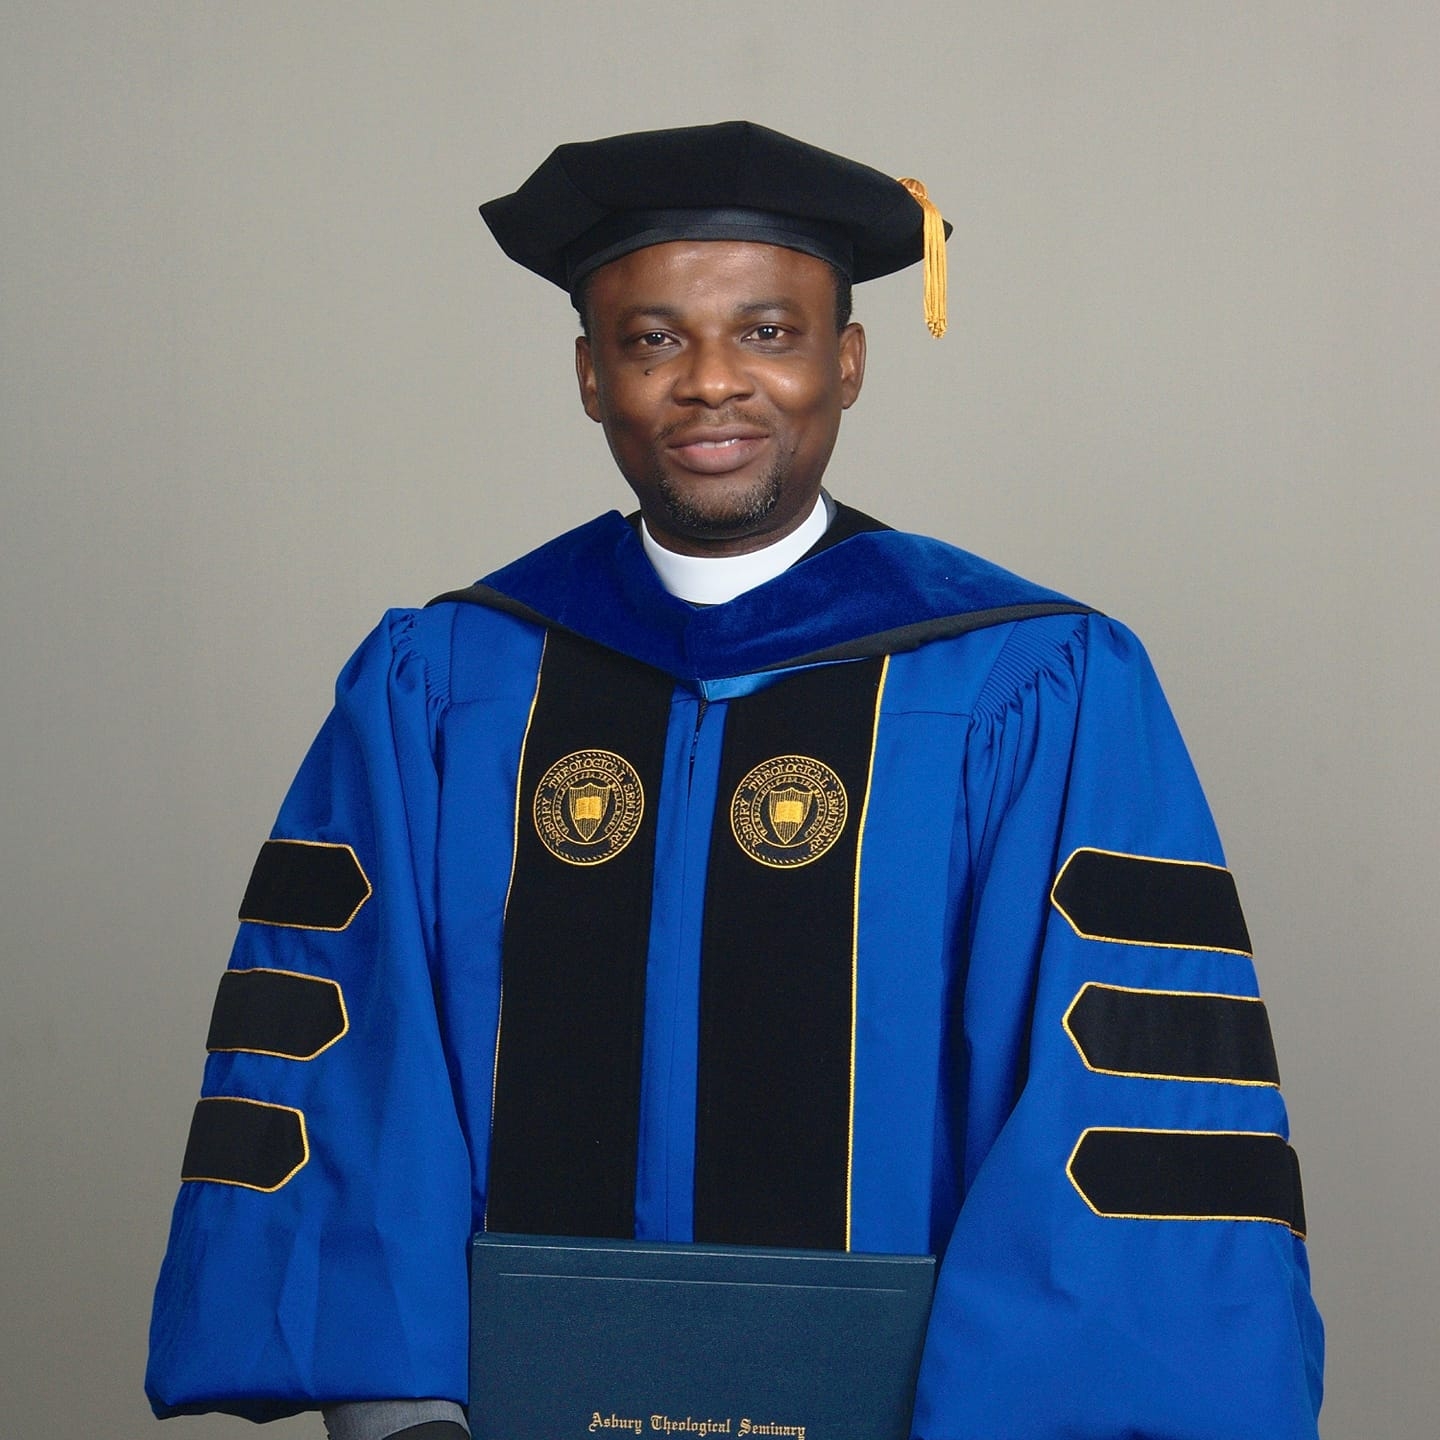 Reverend Dr. Samuel Odubena